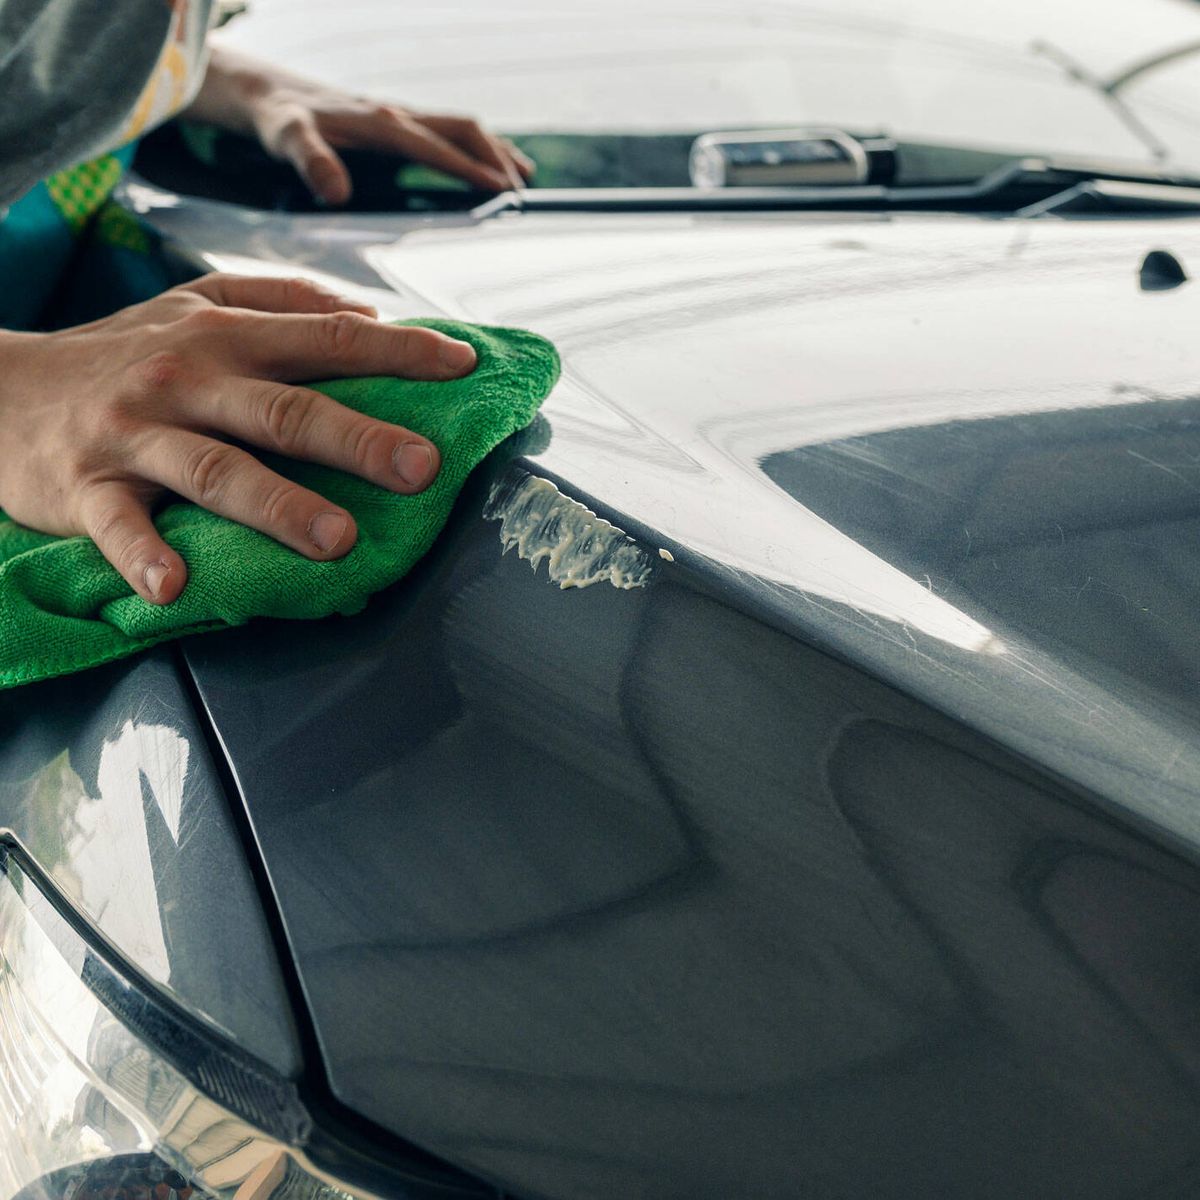 Cómo quitar manchas y arañazos de pintura de tu coche